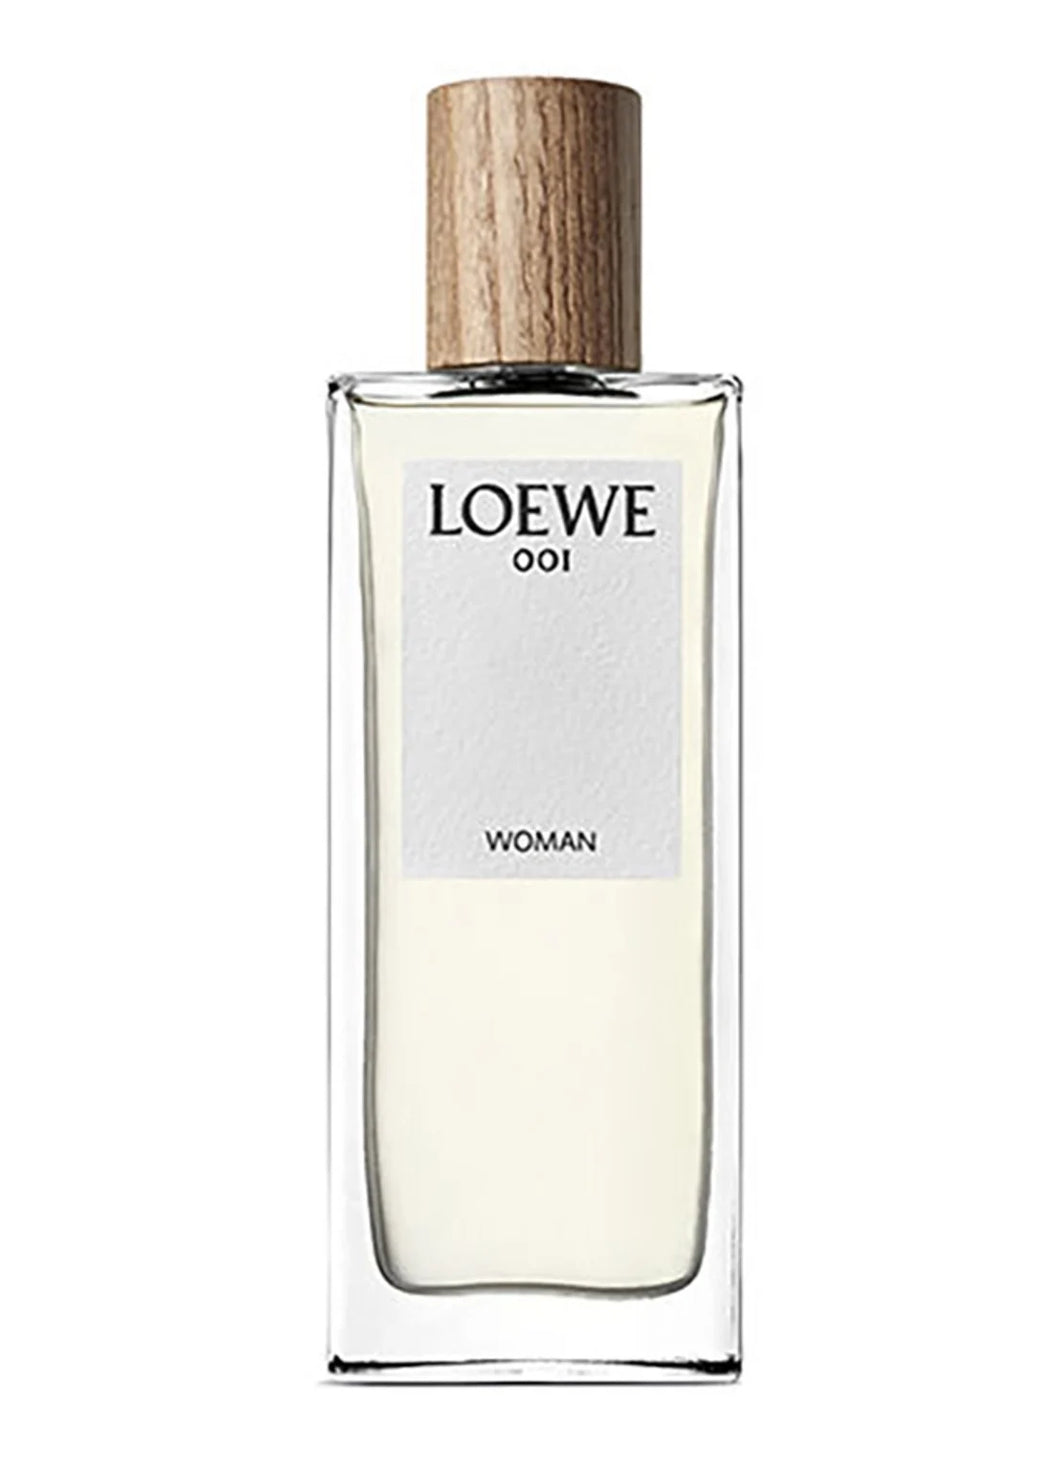 LOEWE - 001 Woman